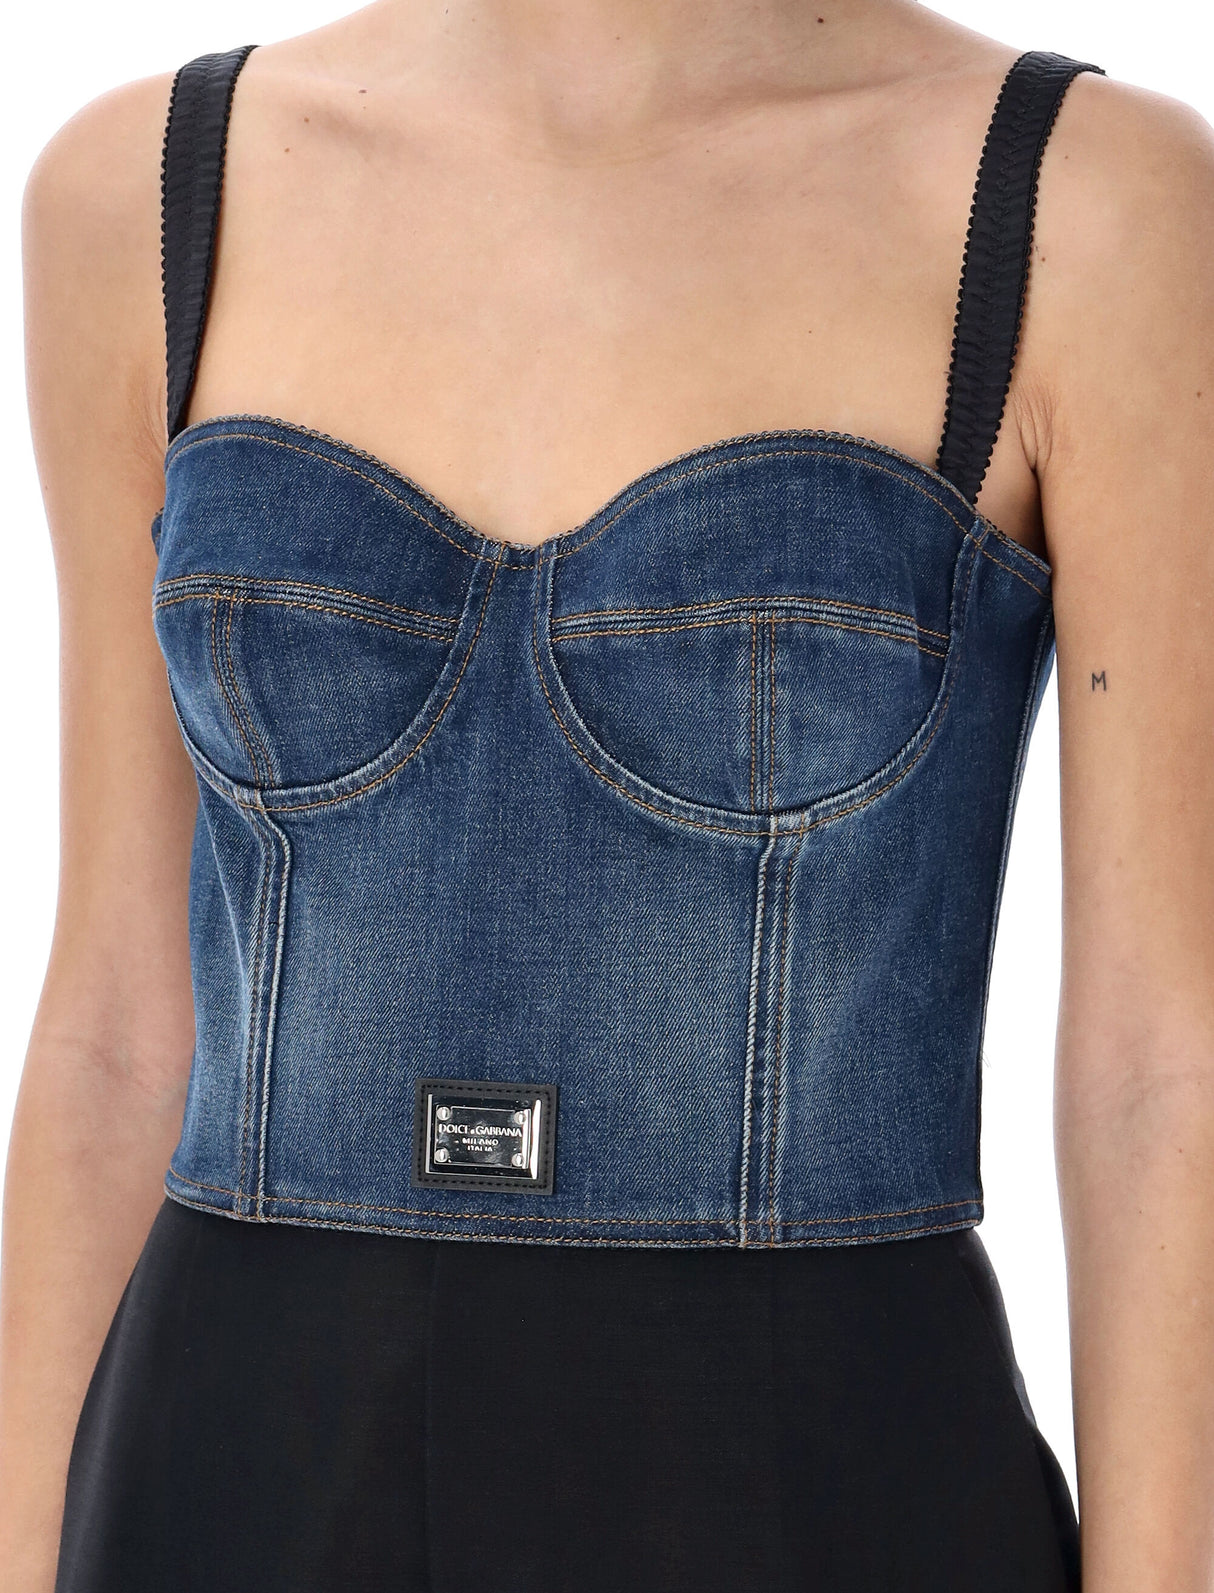 Áo ngắn denim nữ tông màu xanh dòng sản phẩm đầy cá tính từ Nhà mốt thời trang Ý